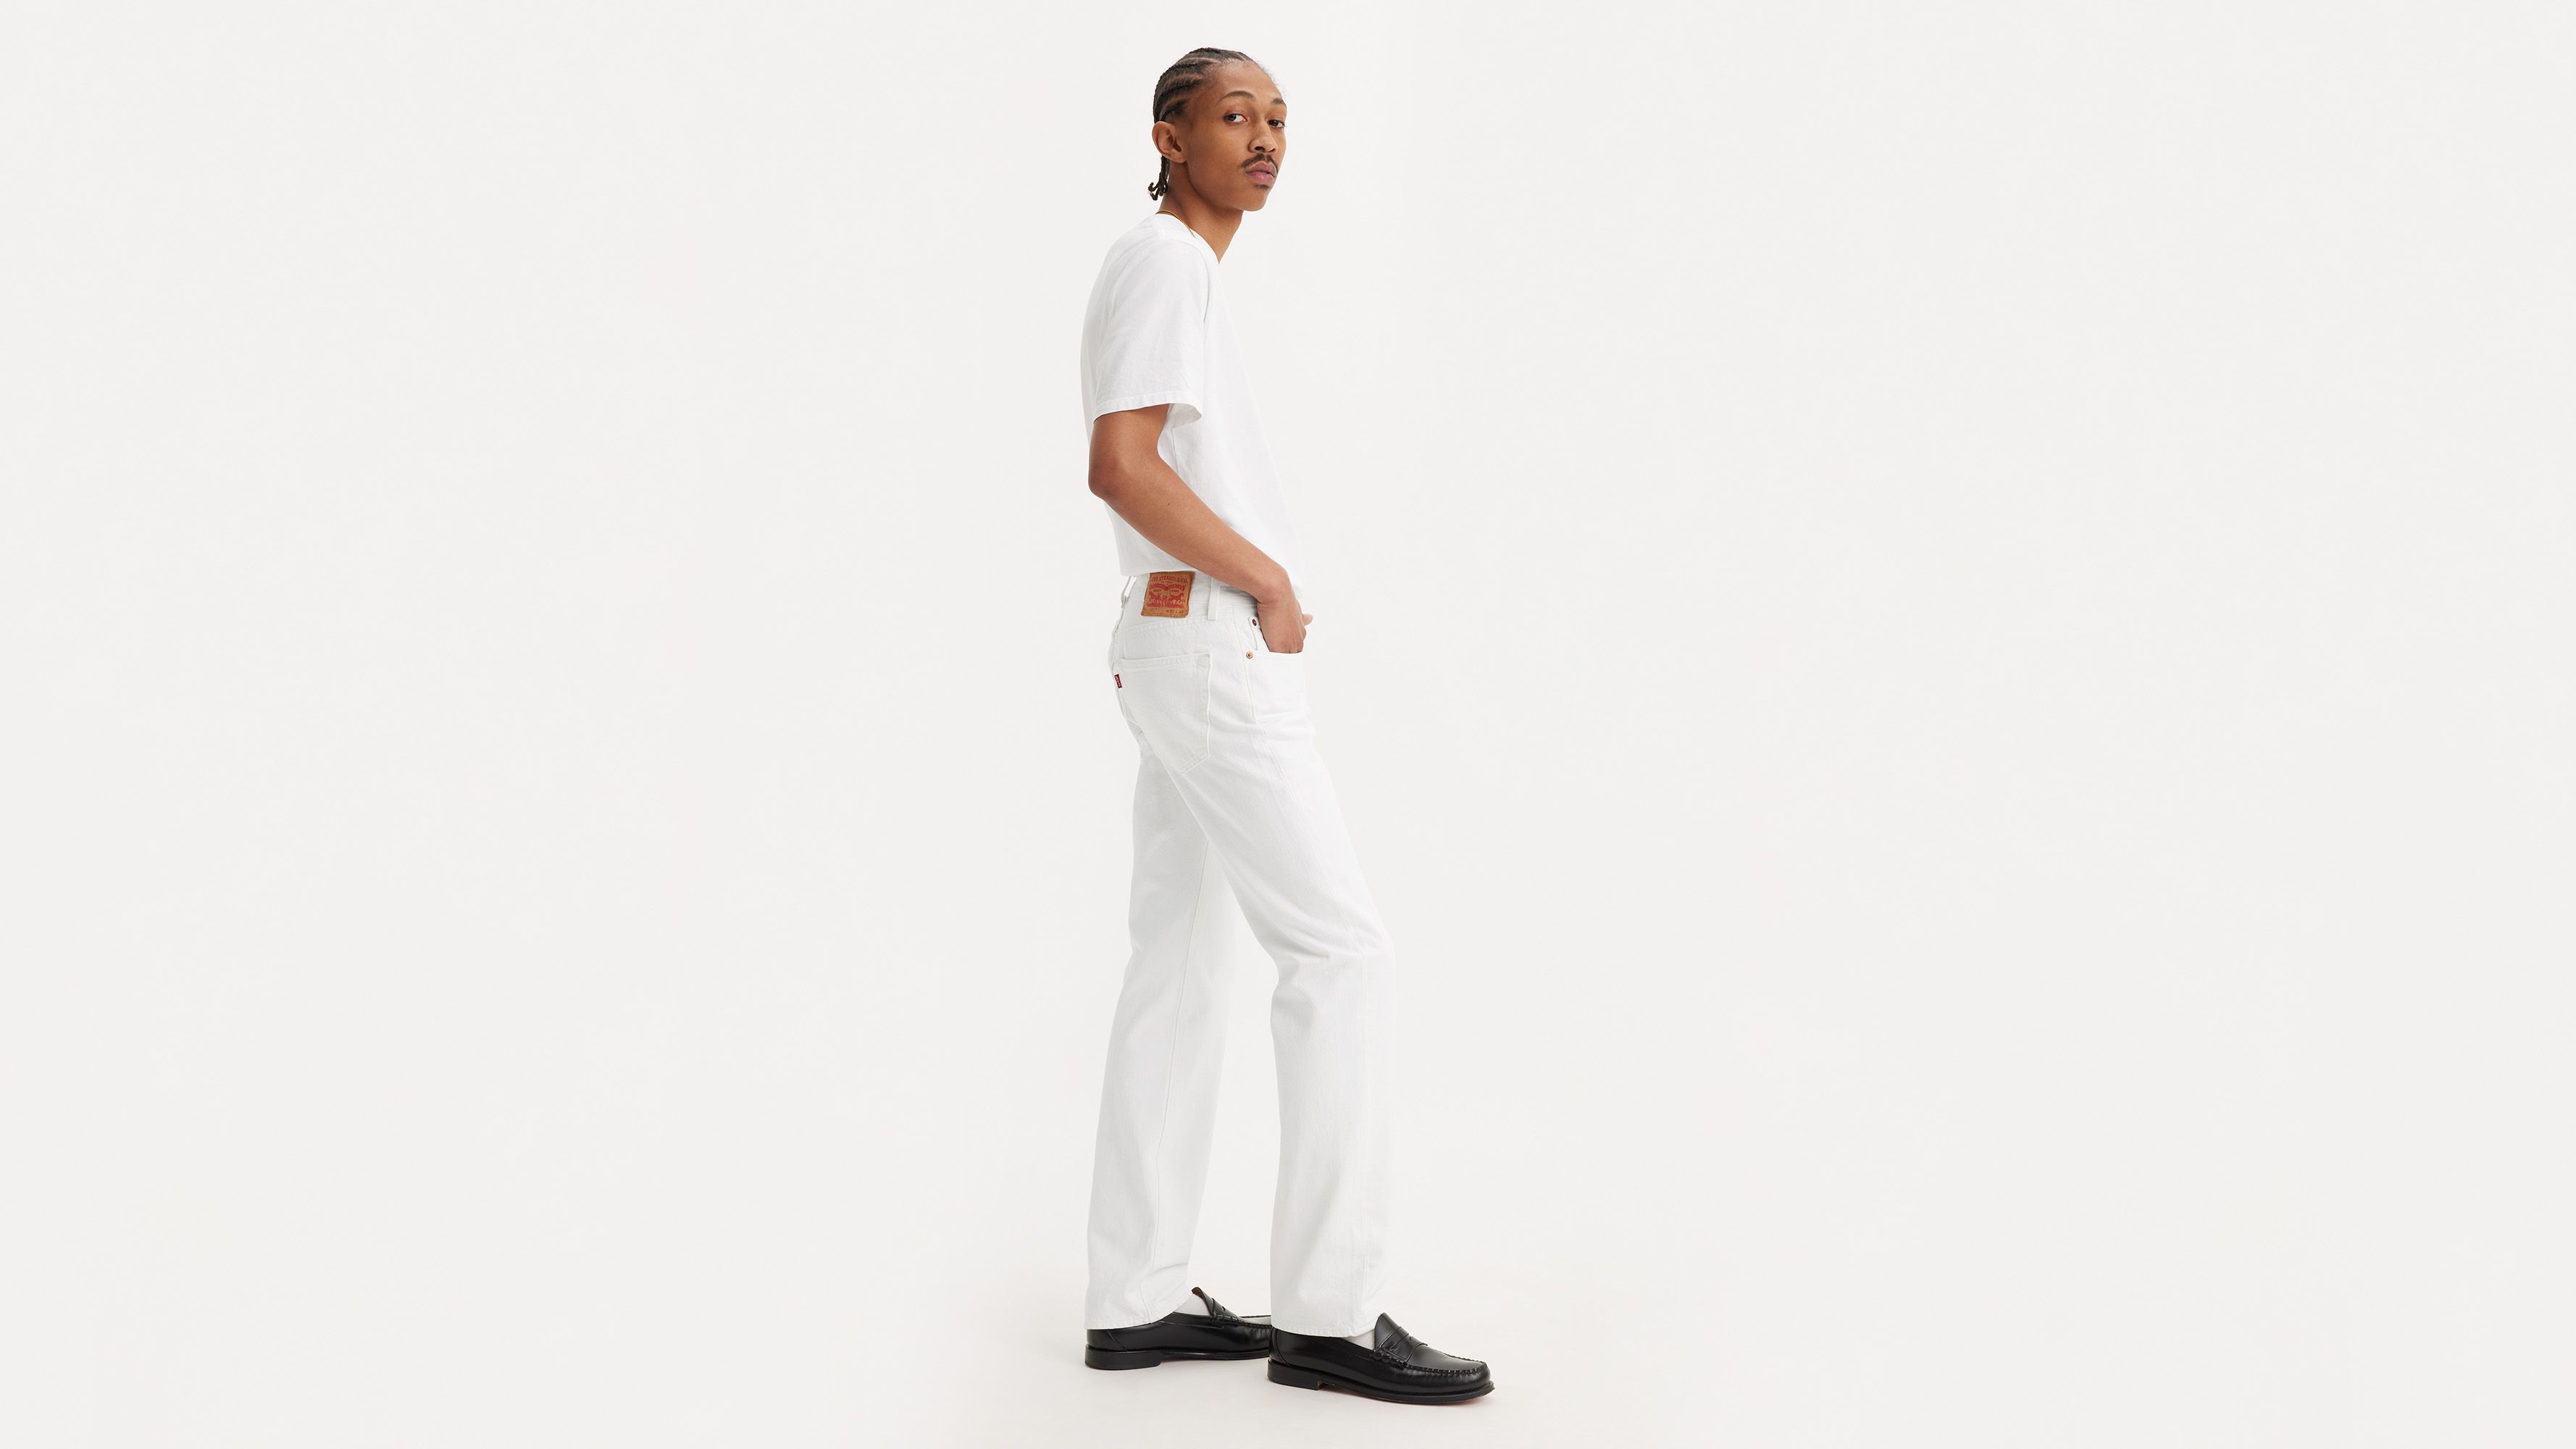 white 501 jeans mens